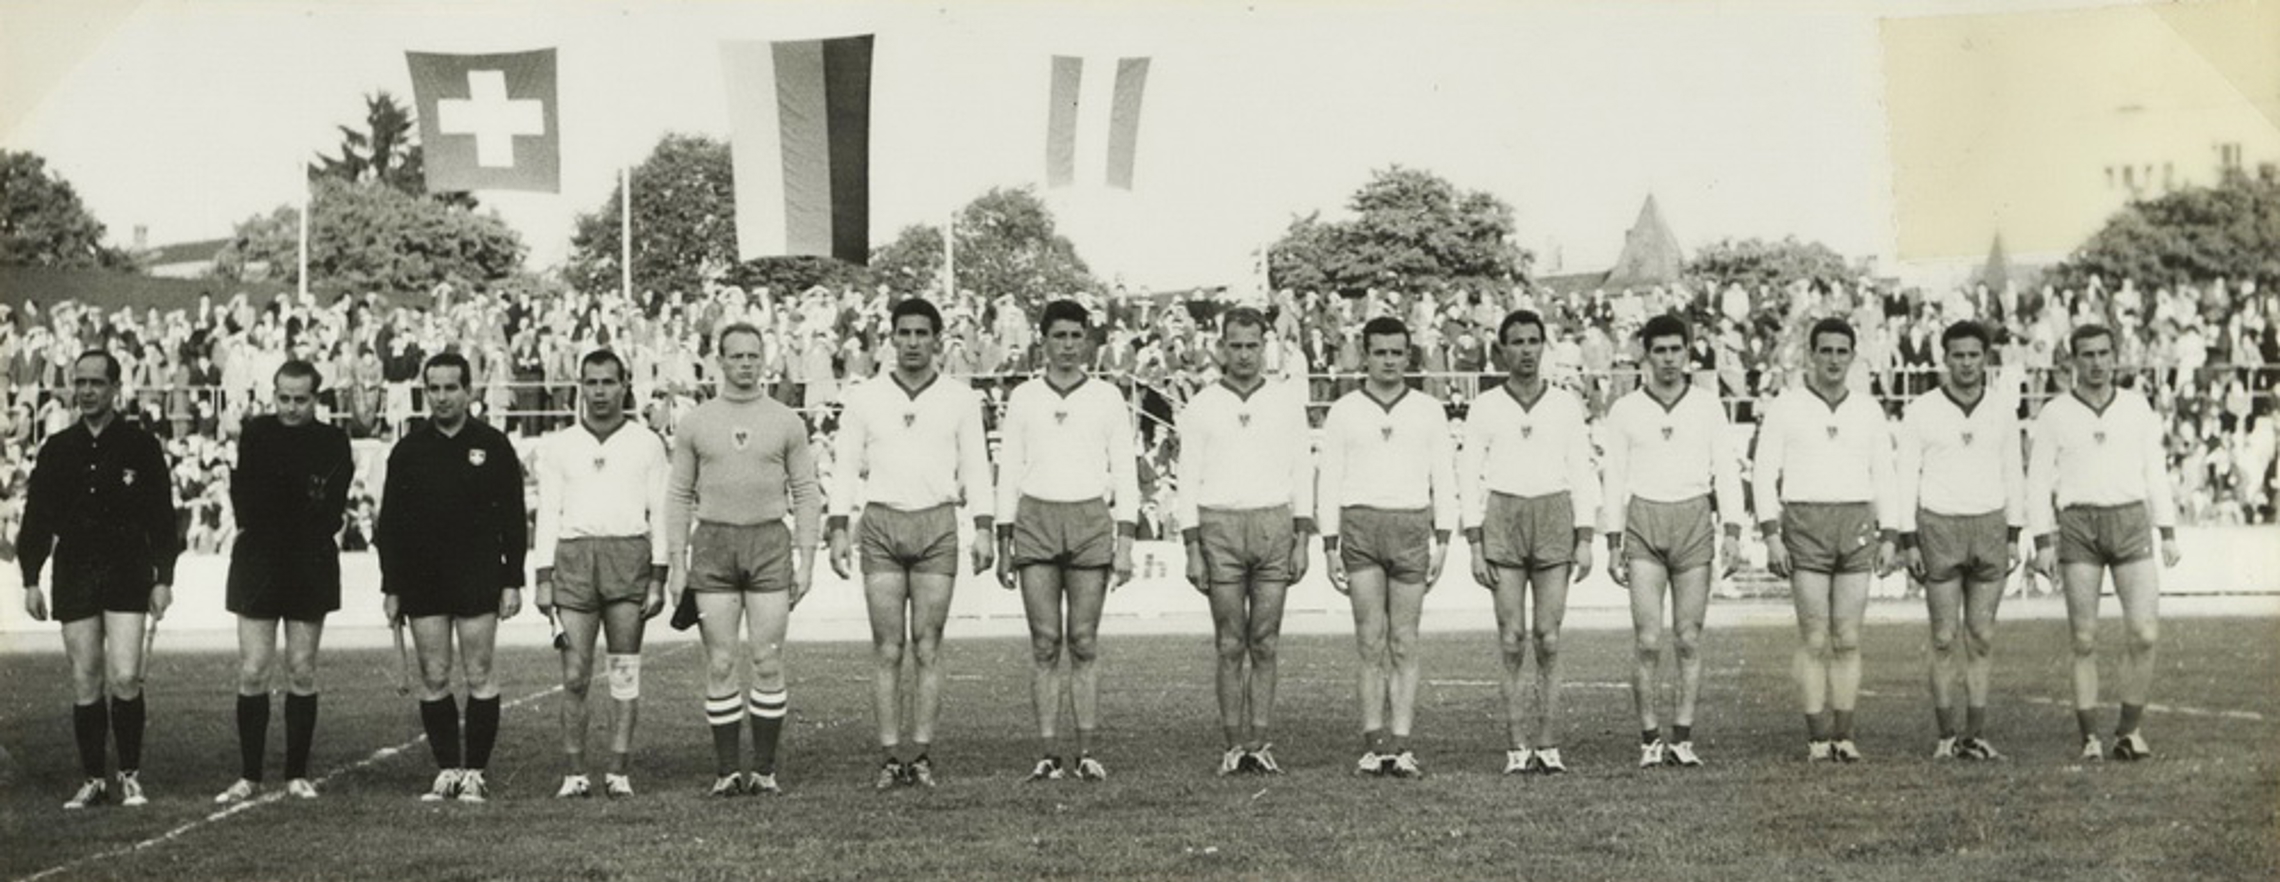 30.5.1961 Schweiz - Österreich 17:12 (9:6), Winterthur, Schützenwiese, 4000 Zuschauer, Schiedsrichter Karl Jung, Augsburg GER